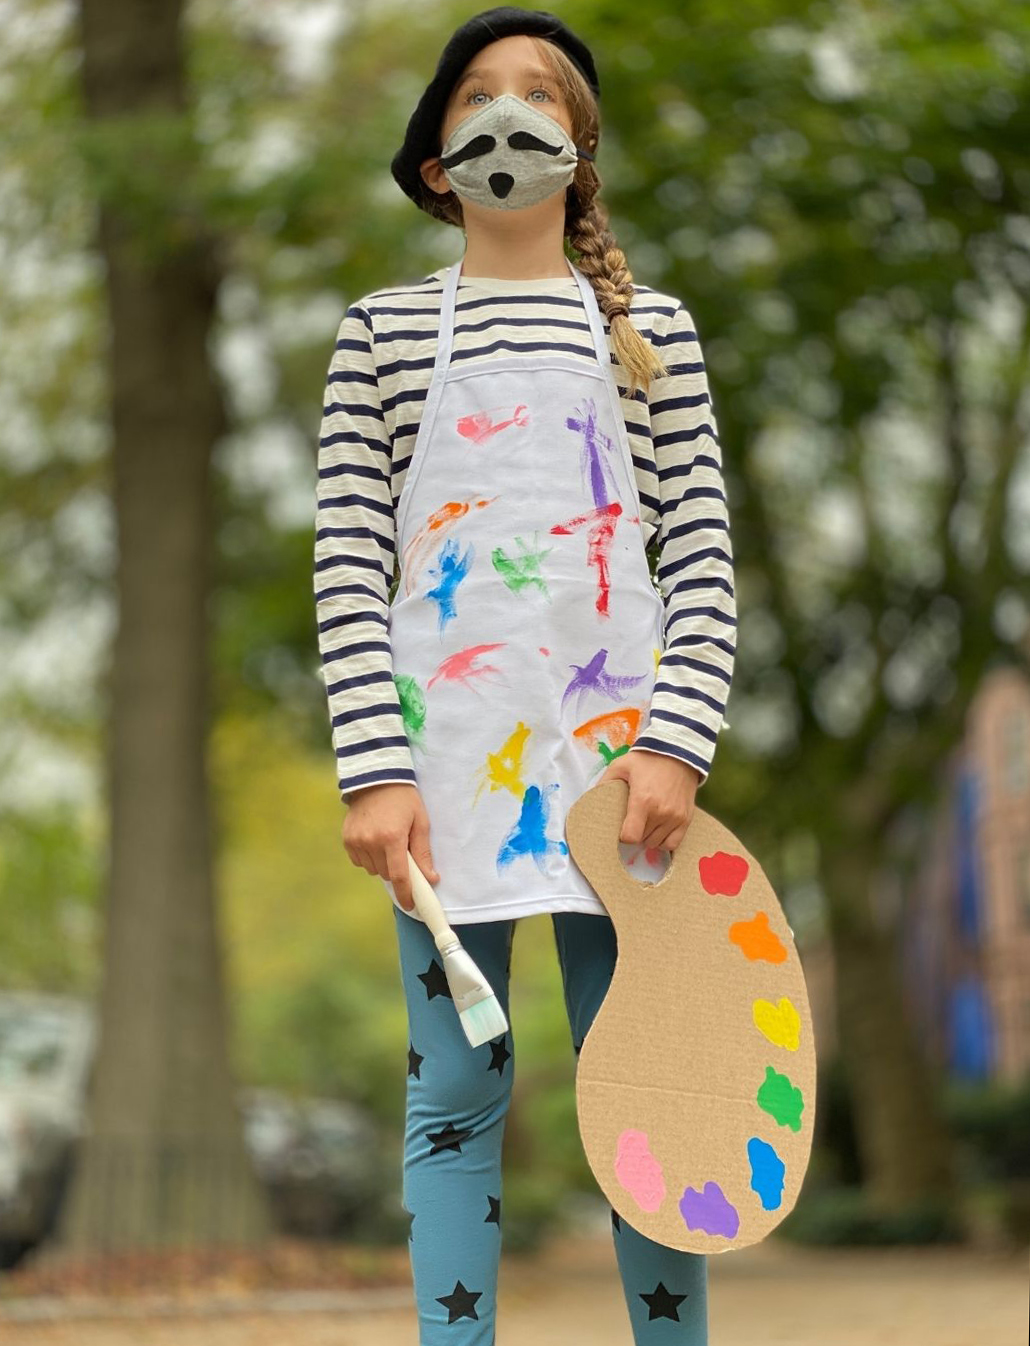 homemade artist costume for kids